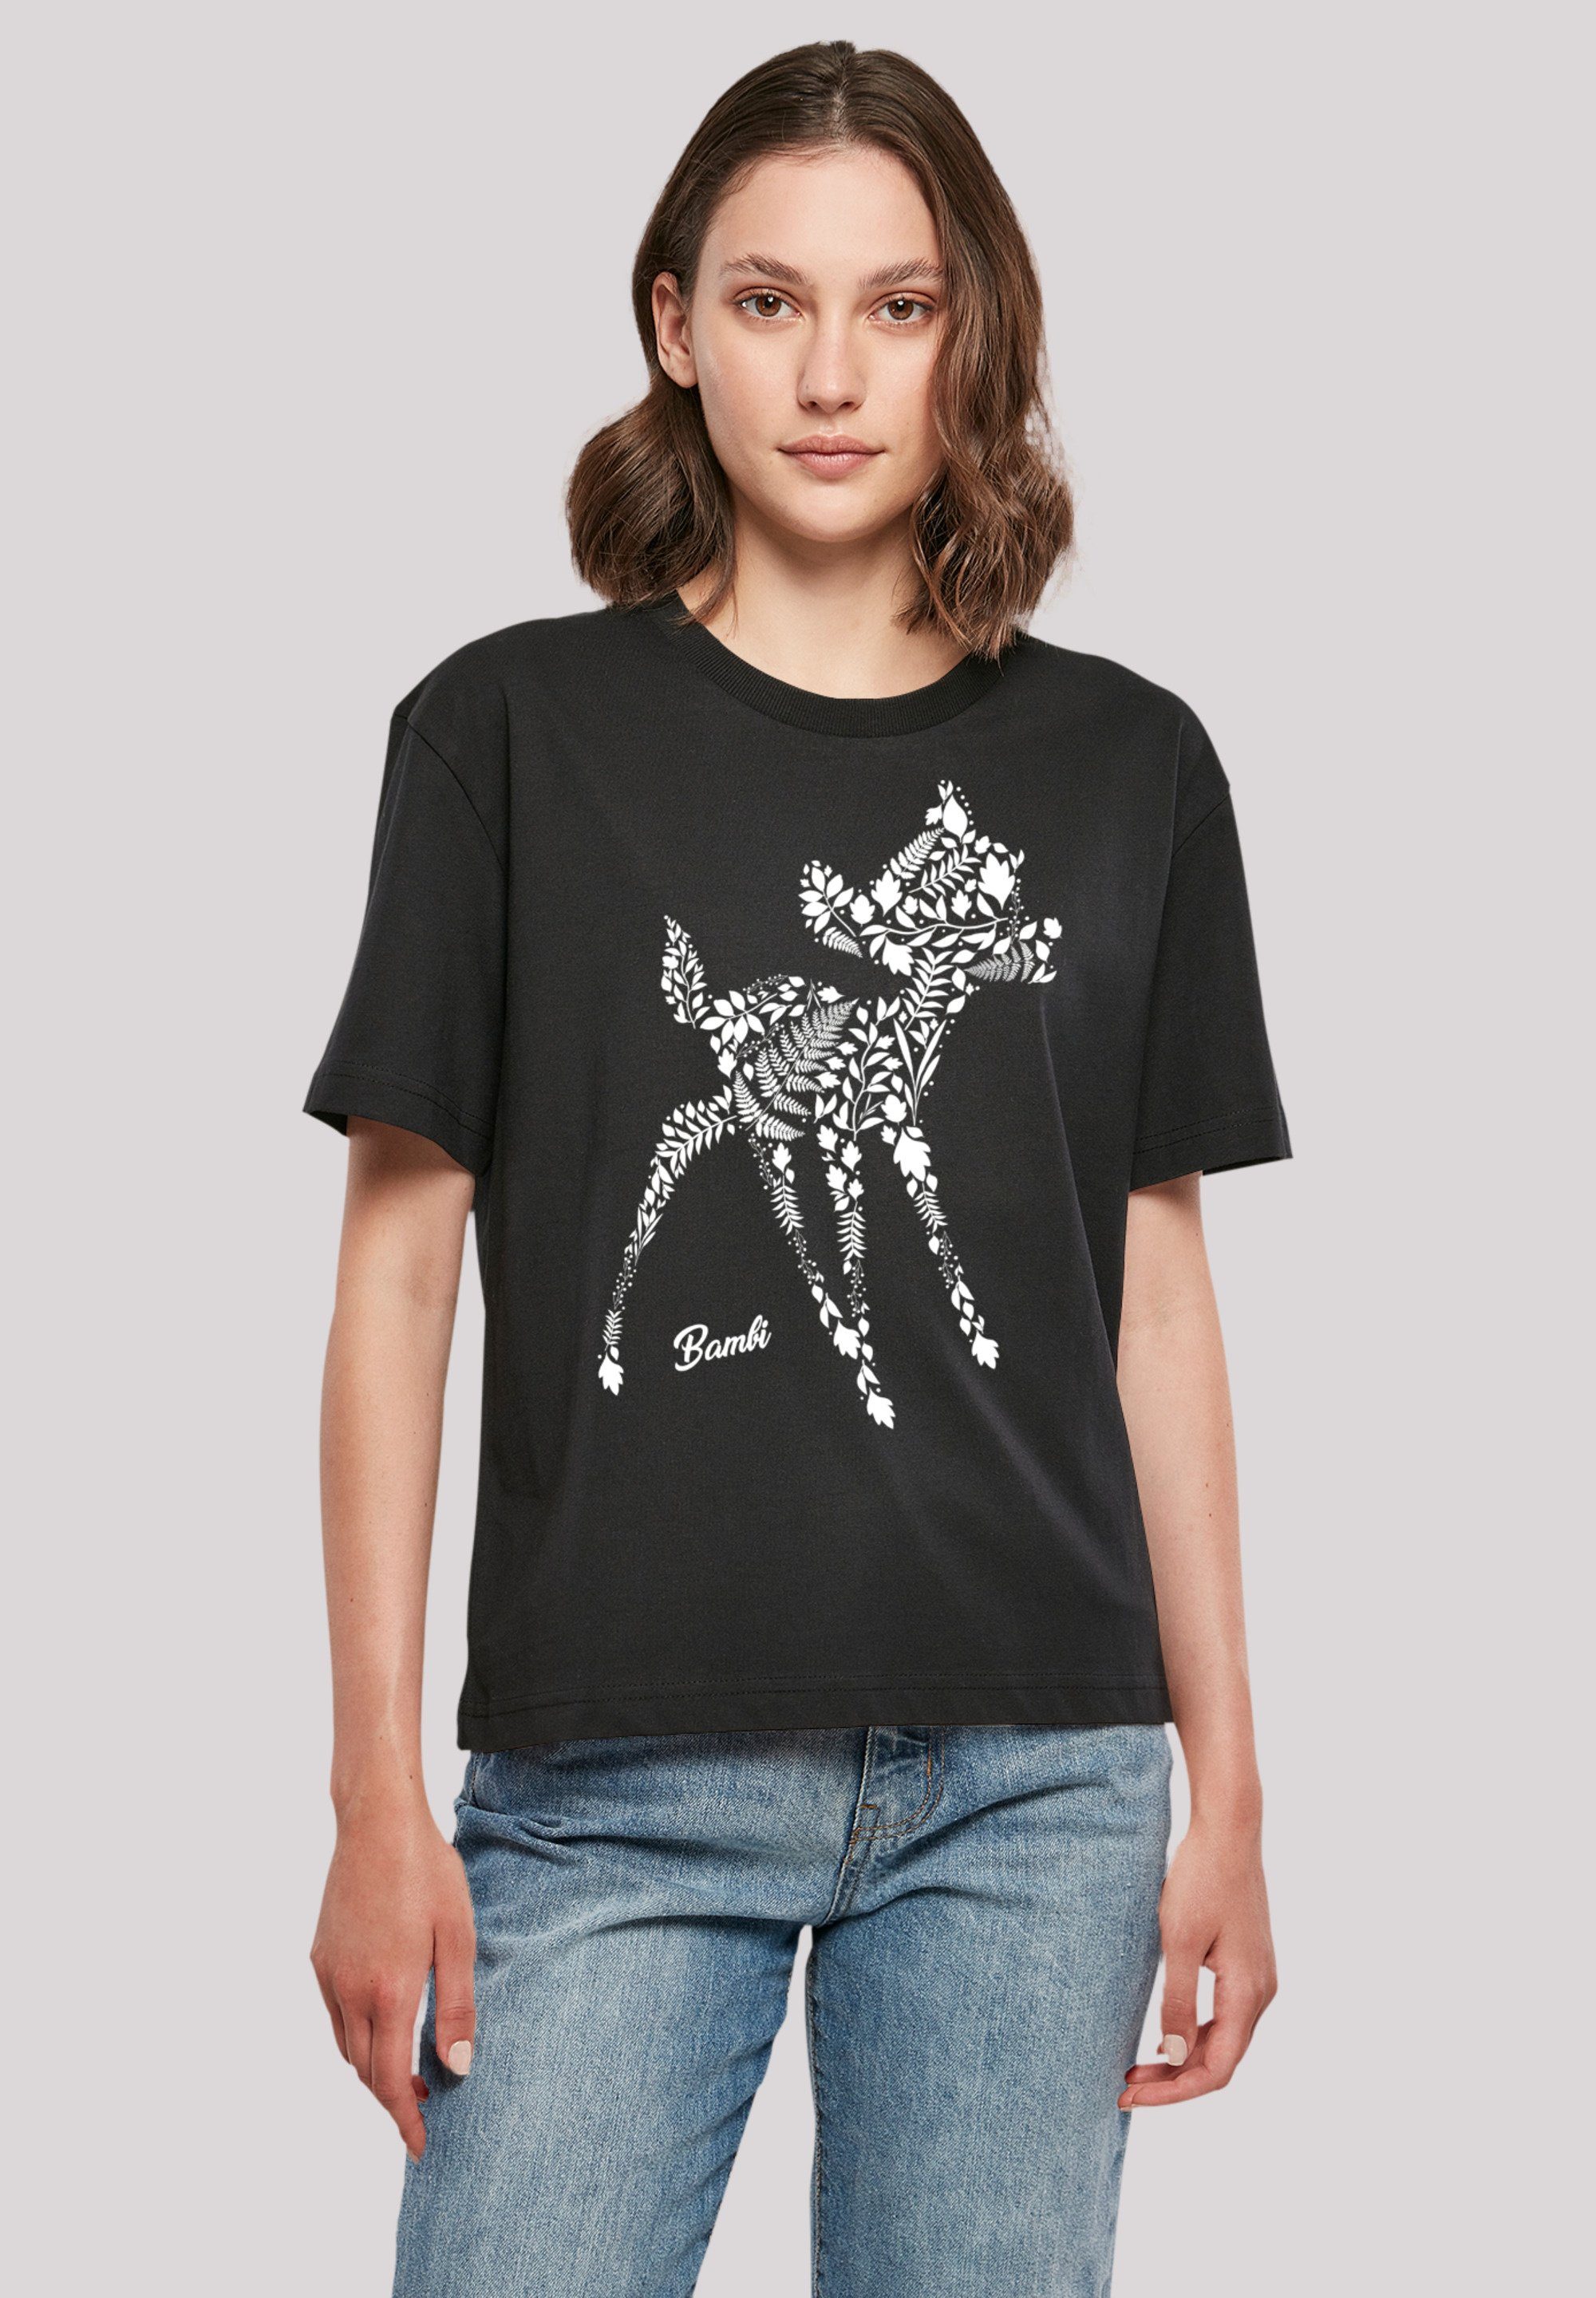 Bambi Mode online kaufen » Bekleidung | Bambi OTTO